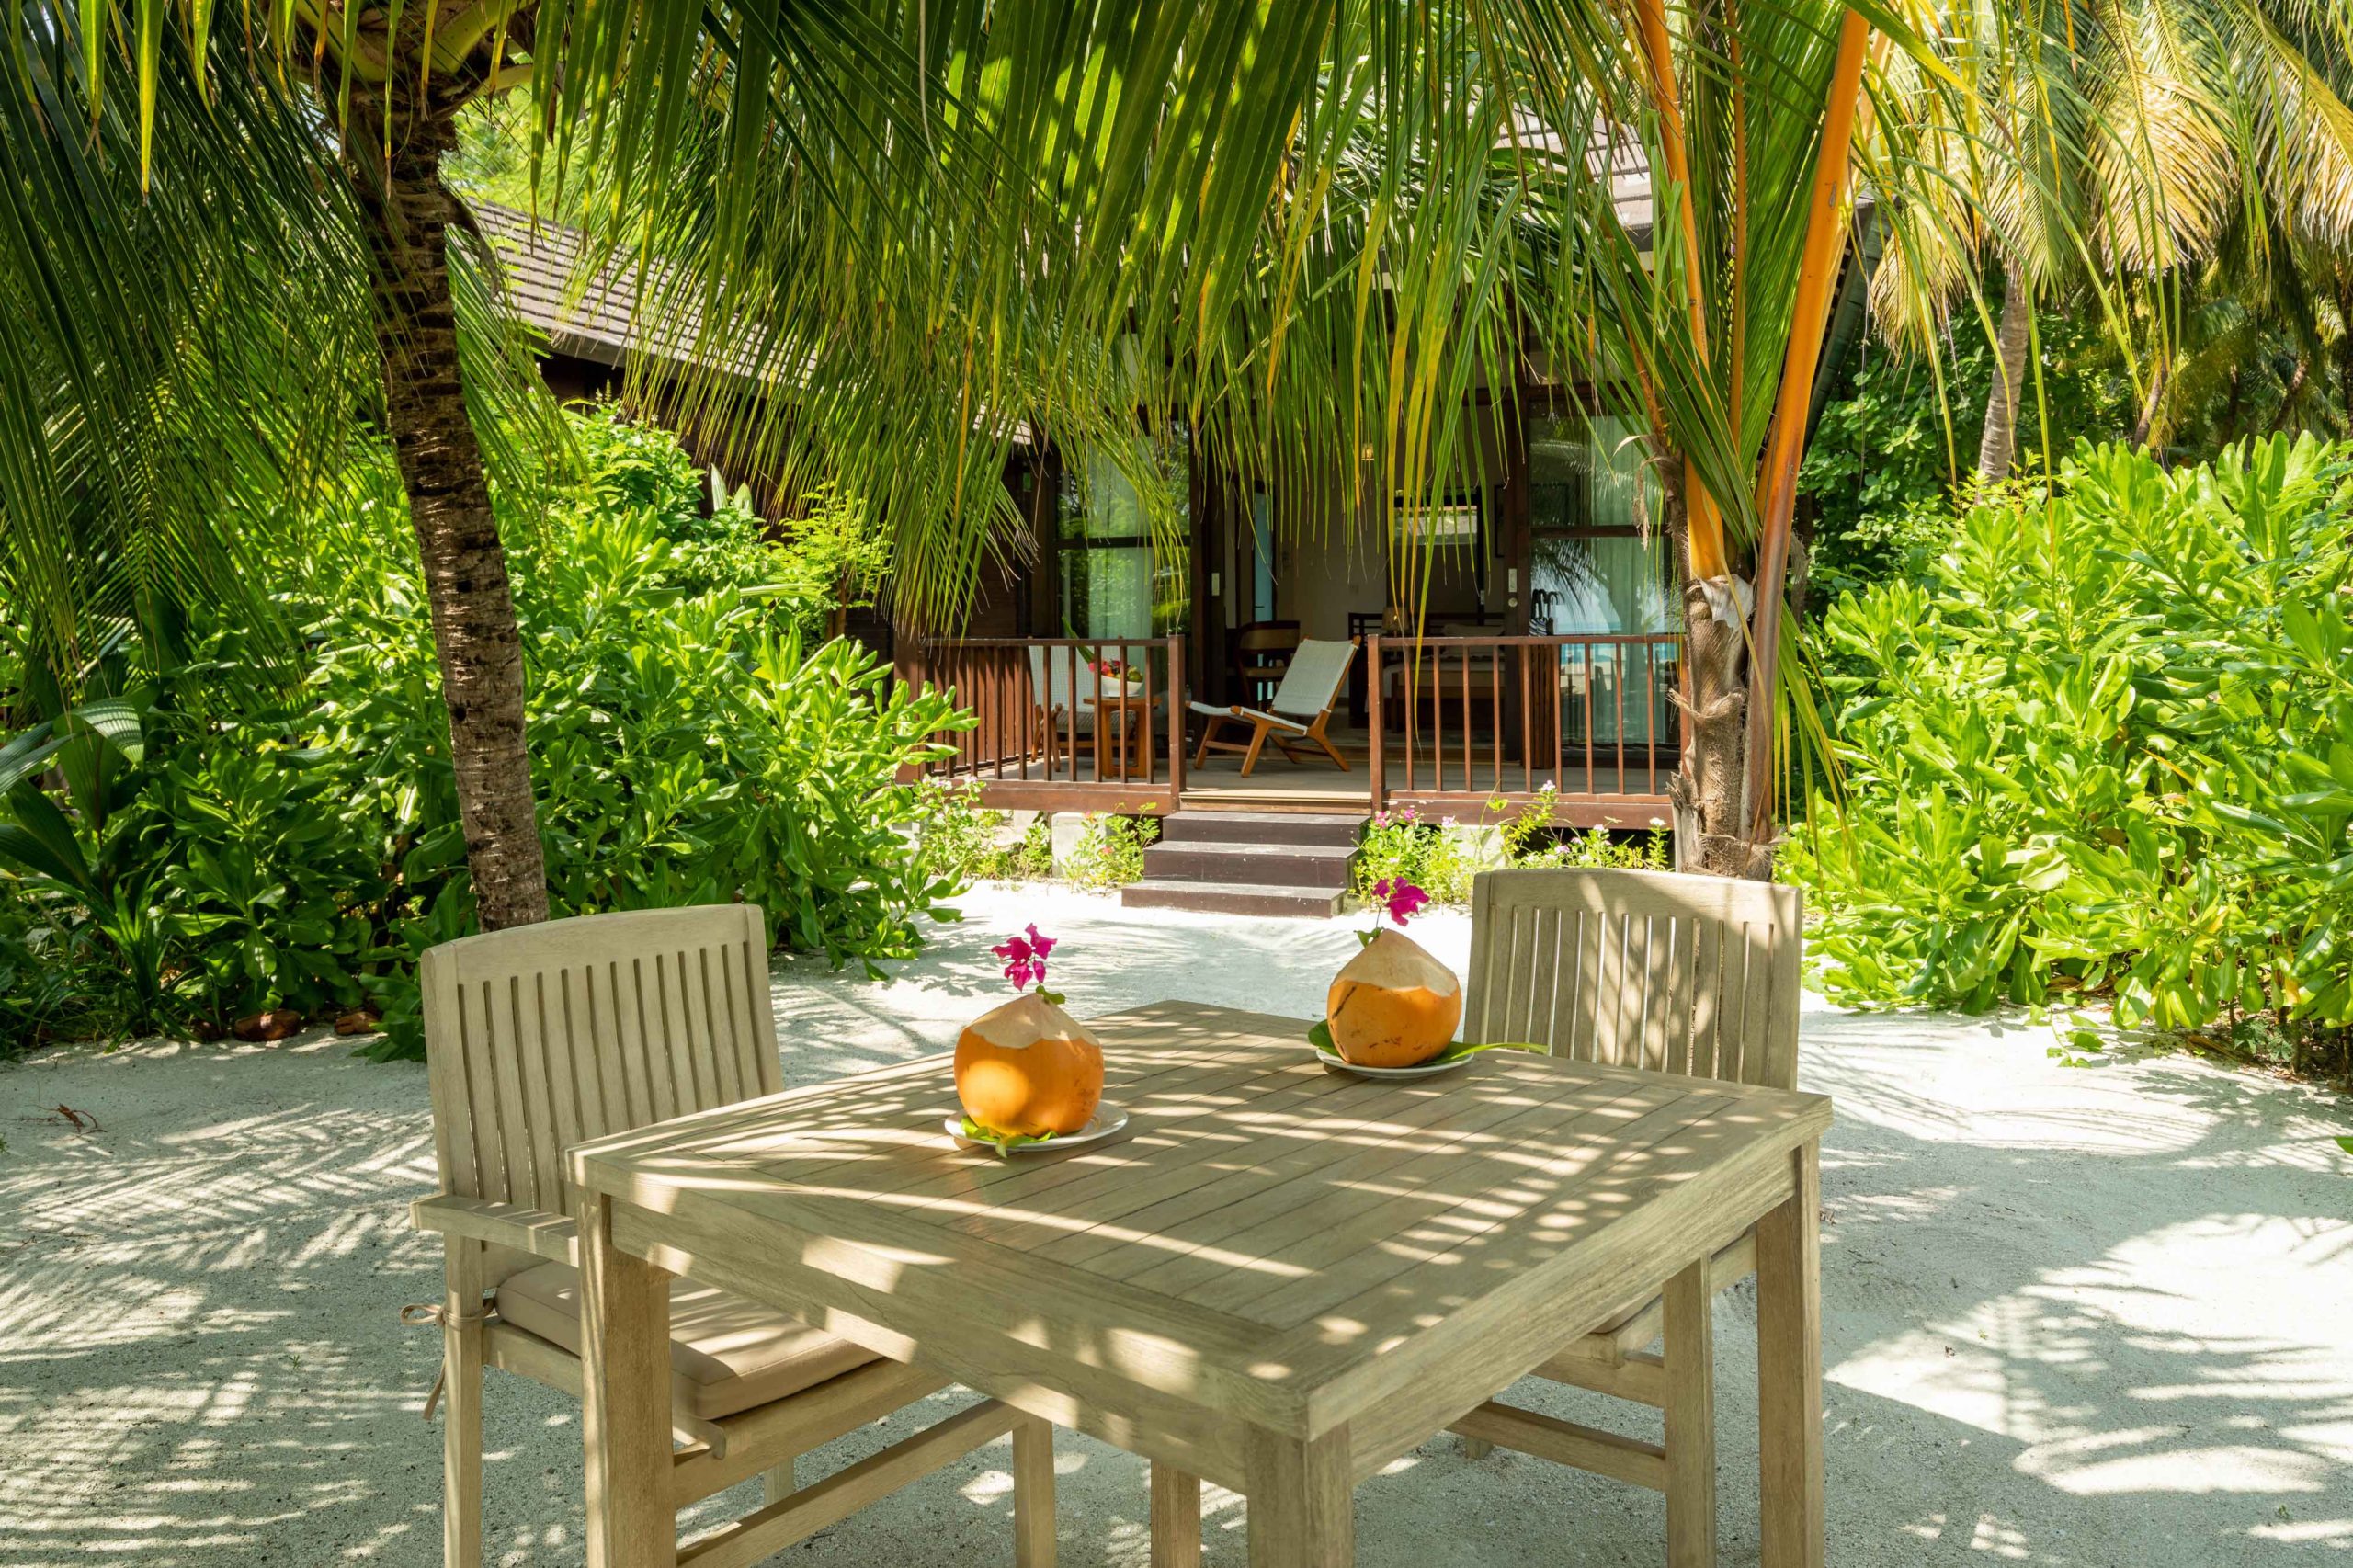 Deluxe-Beach-Villa-Exterior - Fiyavalhu Resort Maldives